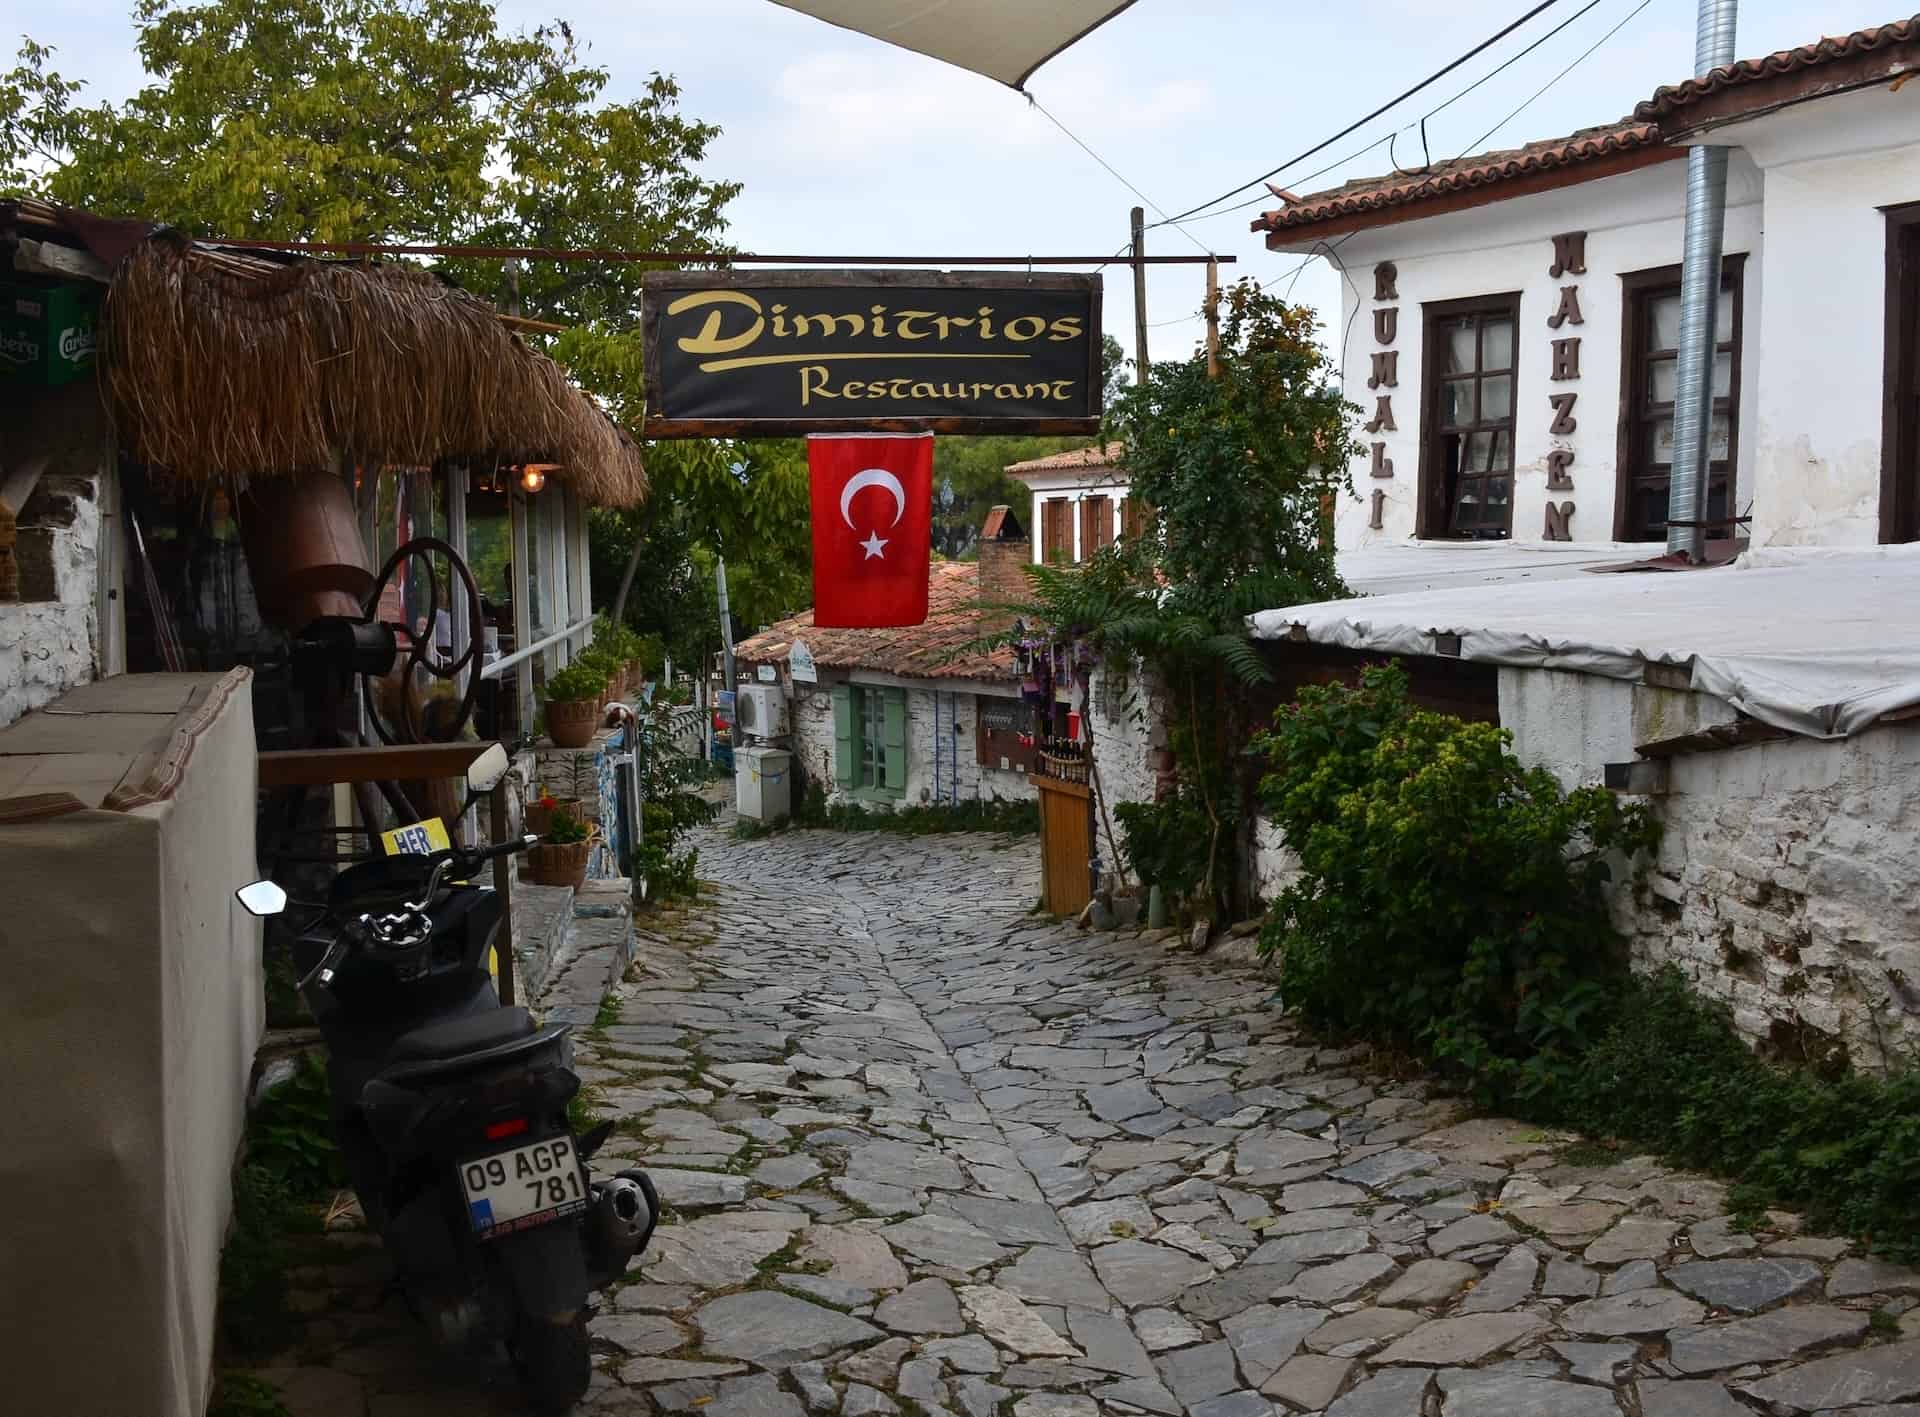 Dimitrios Restaurant